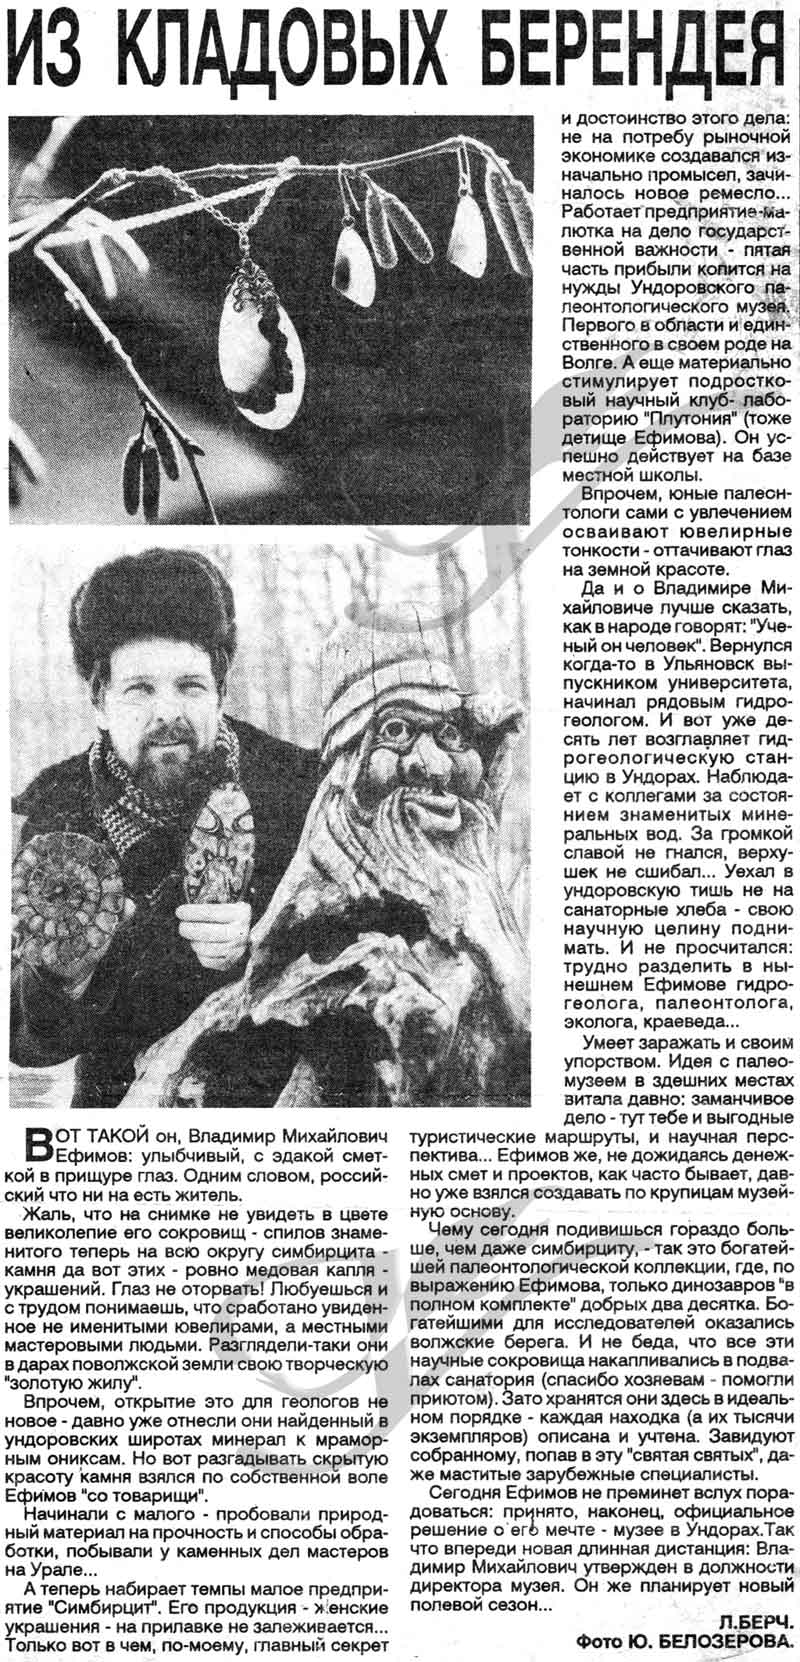 Камень симбирцит. История. "Народная газета", Ульяновск. Ноябрь 1990 г.